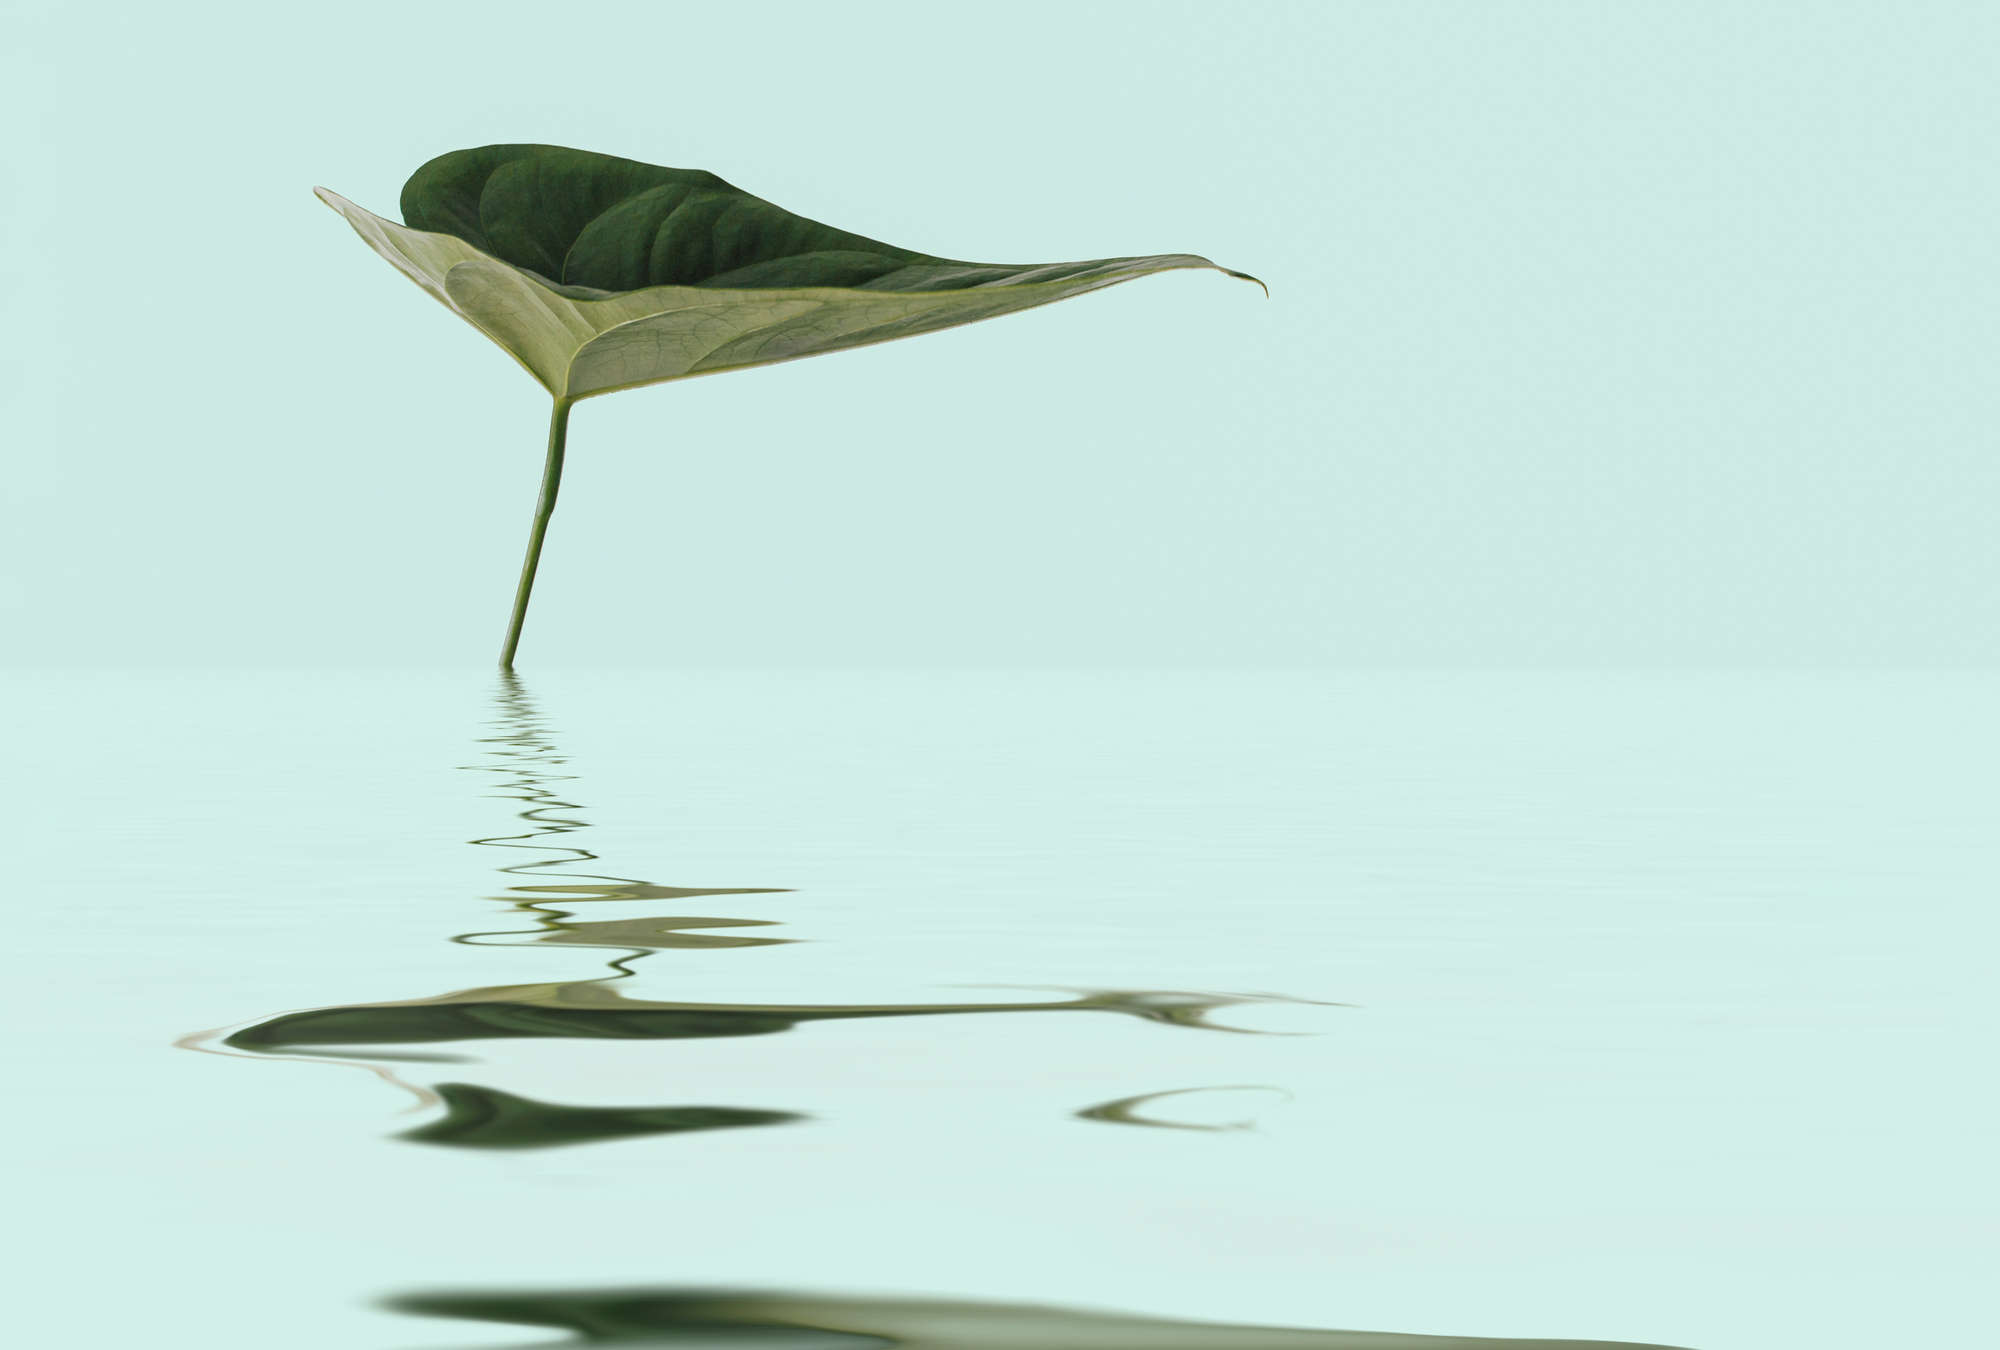             Papier peint panoramique zen avec feuille dans l'eau pour un design bien-être
        